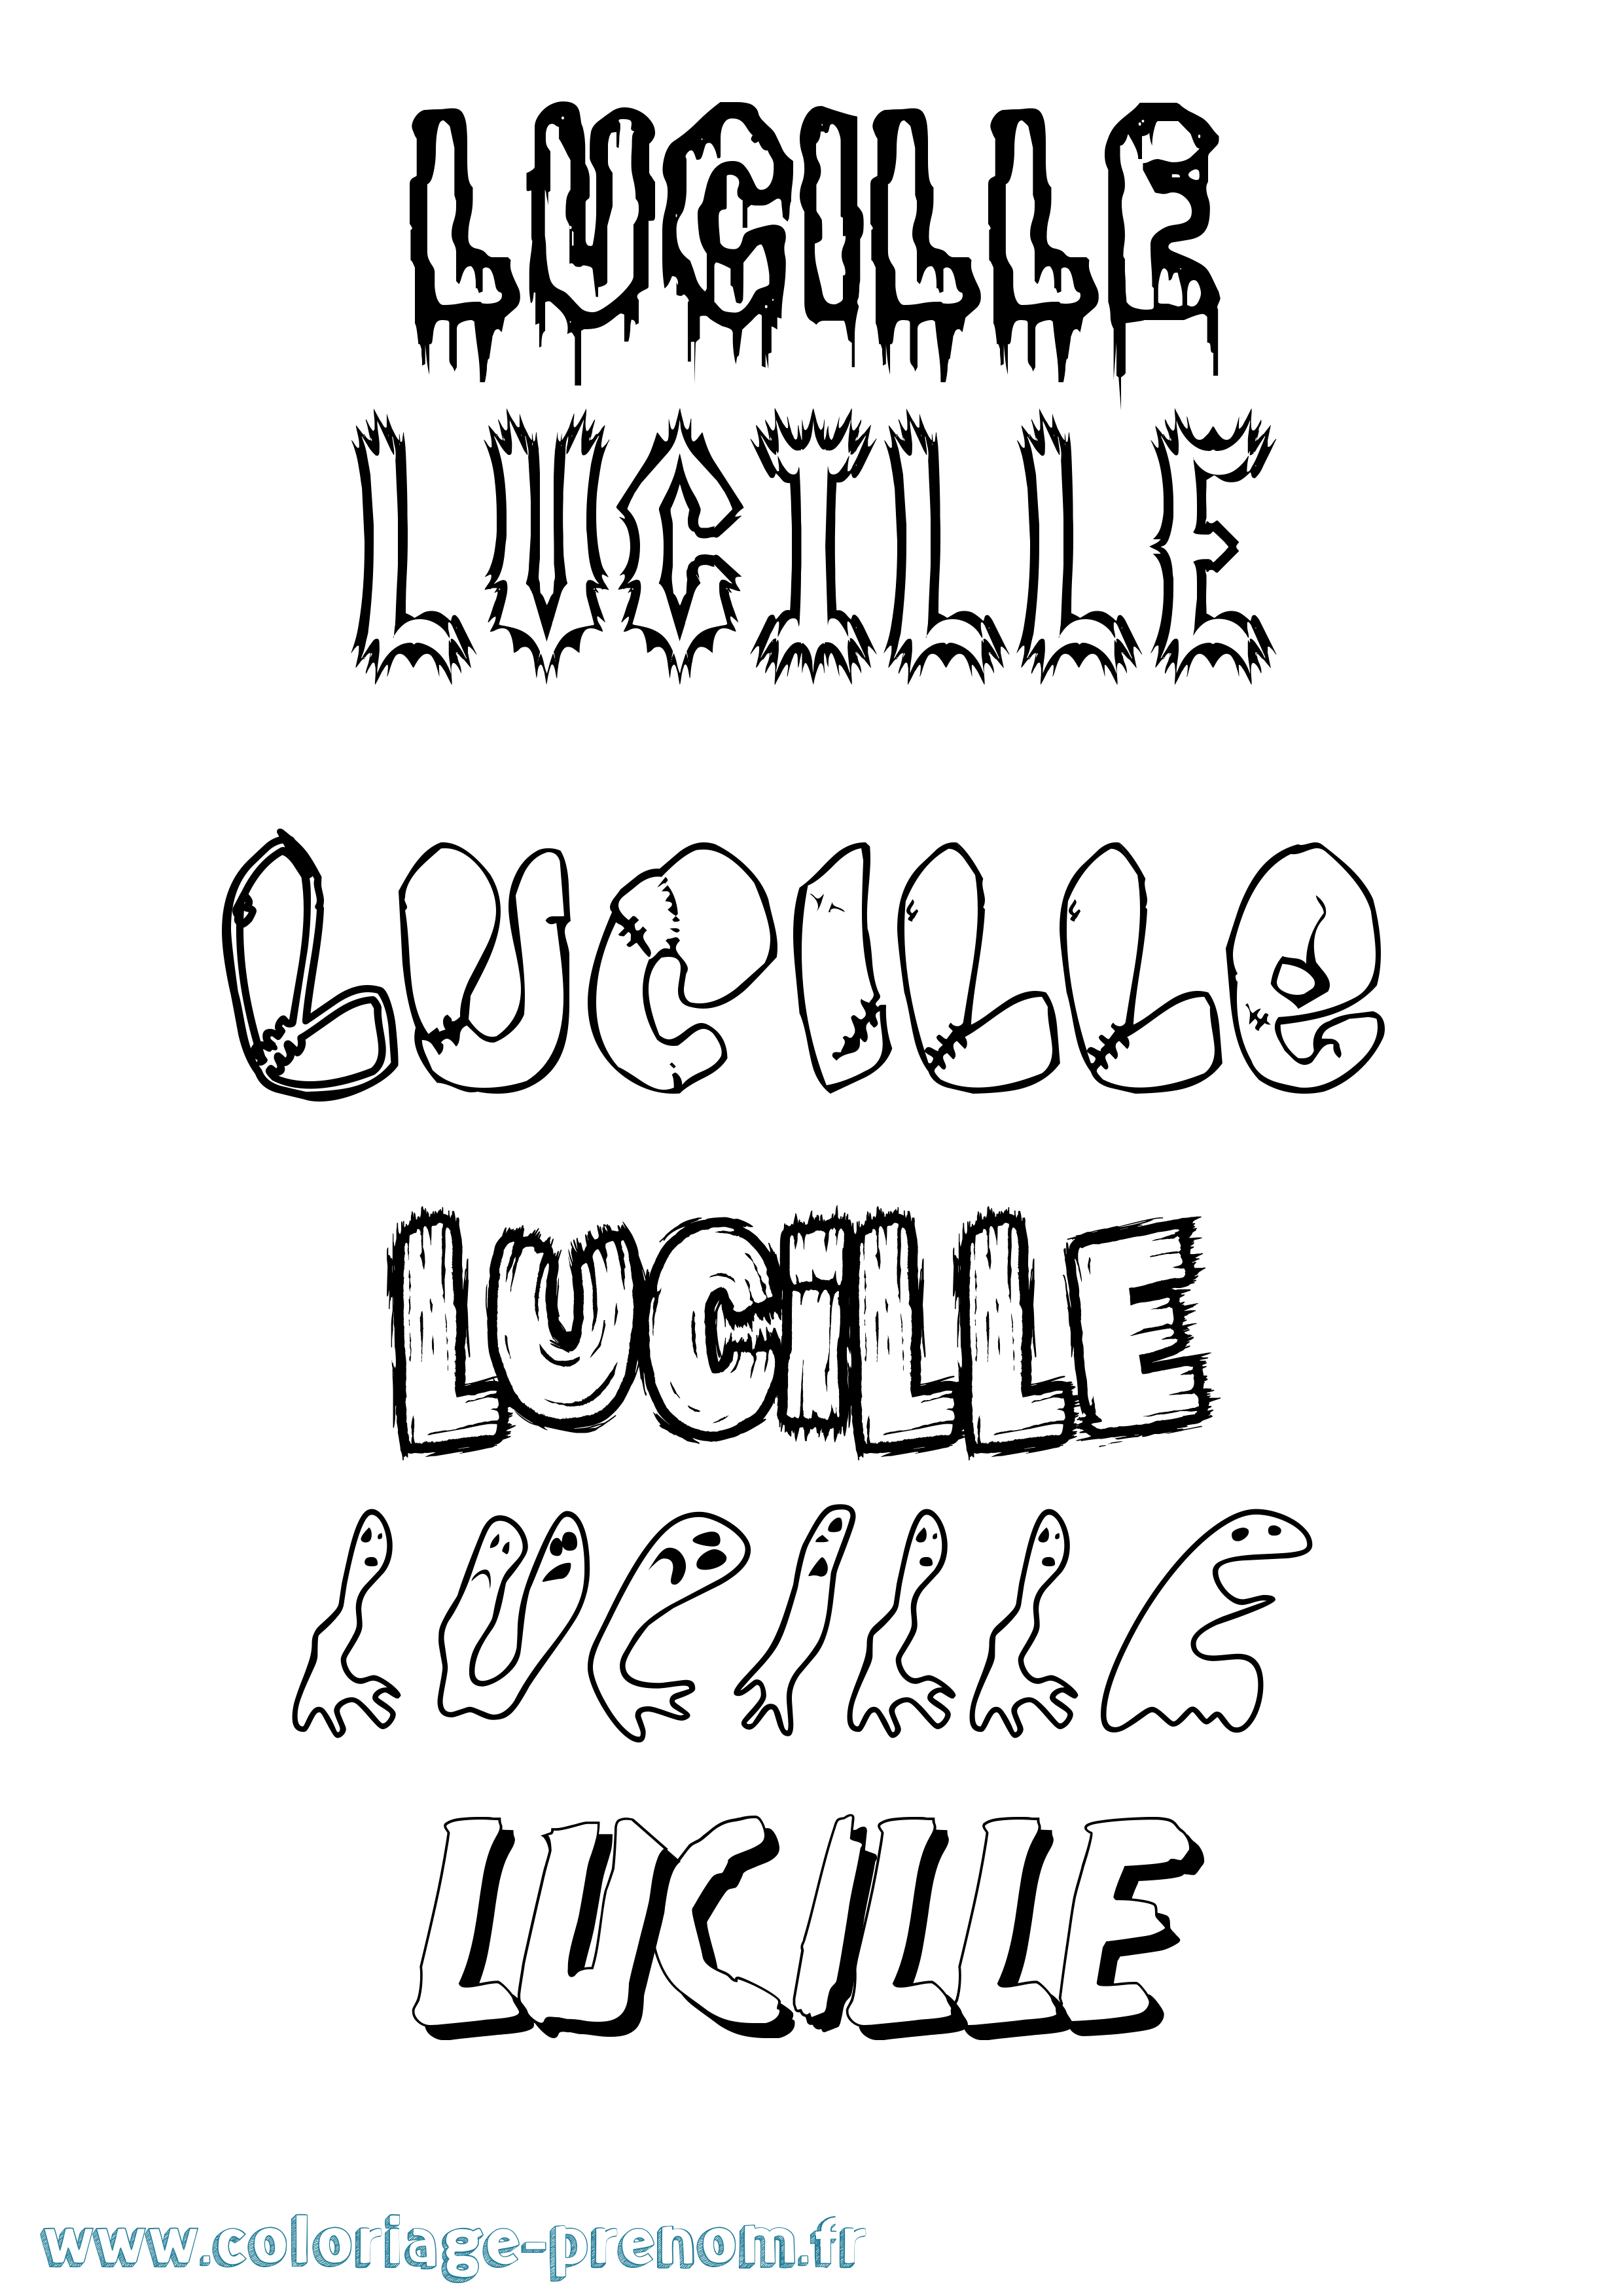 Coloriage prénom Lucille Frisson